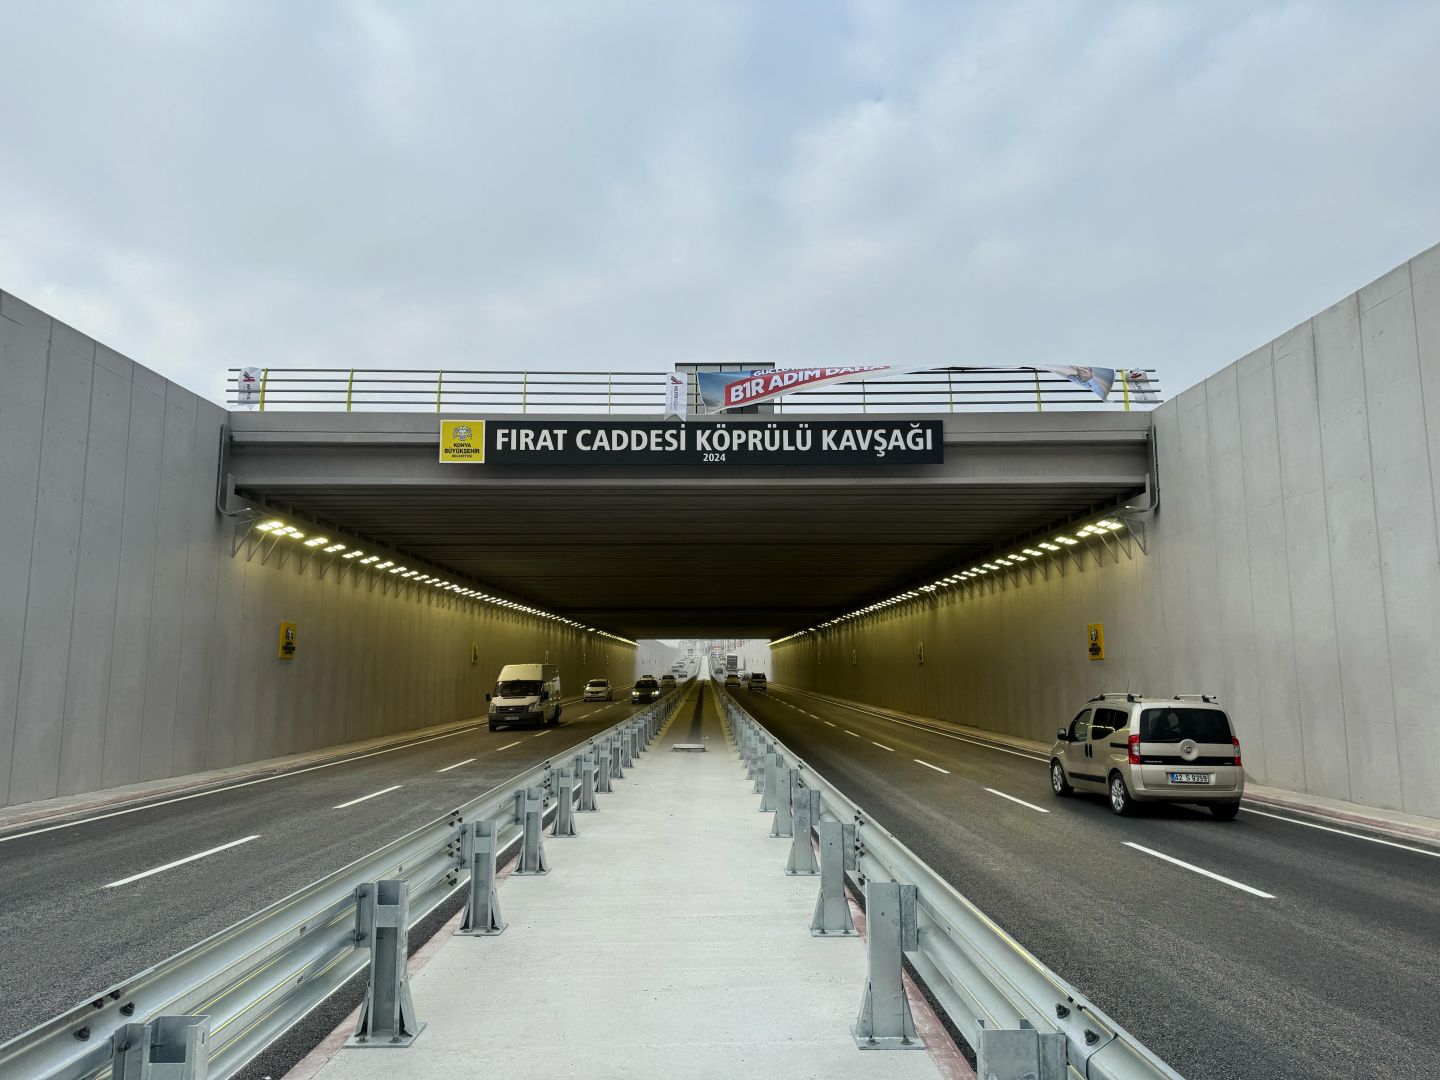 Başkan Altay: “İstanbul Yolu Fırat Caddesi Köprülü Kavşağı Şehrimize Hayırlı Olsun”